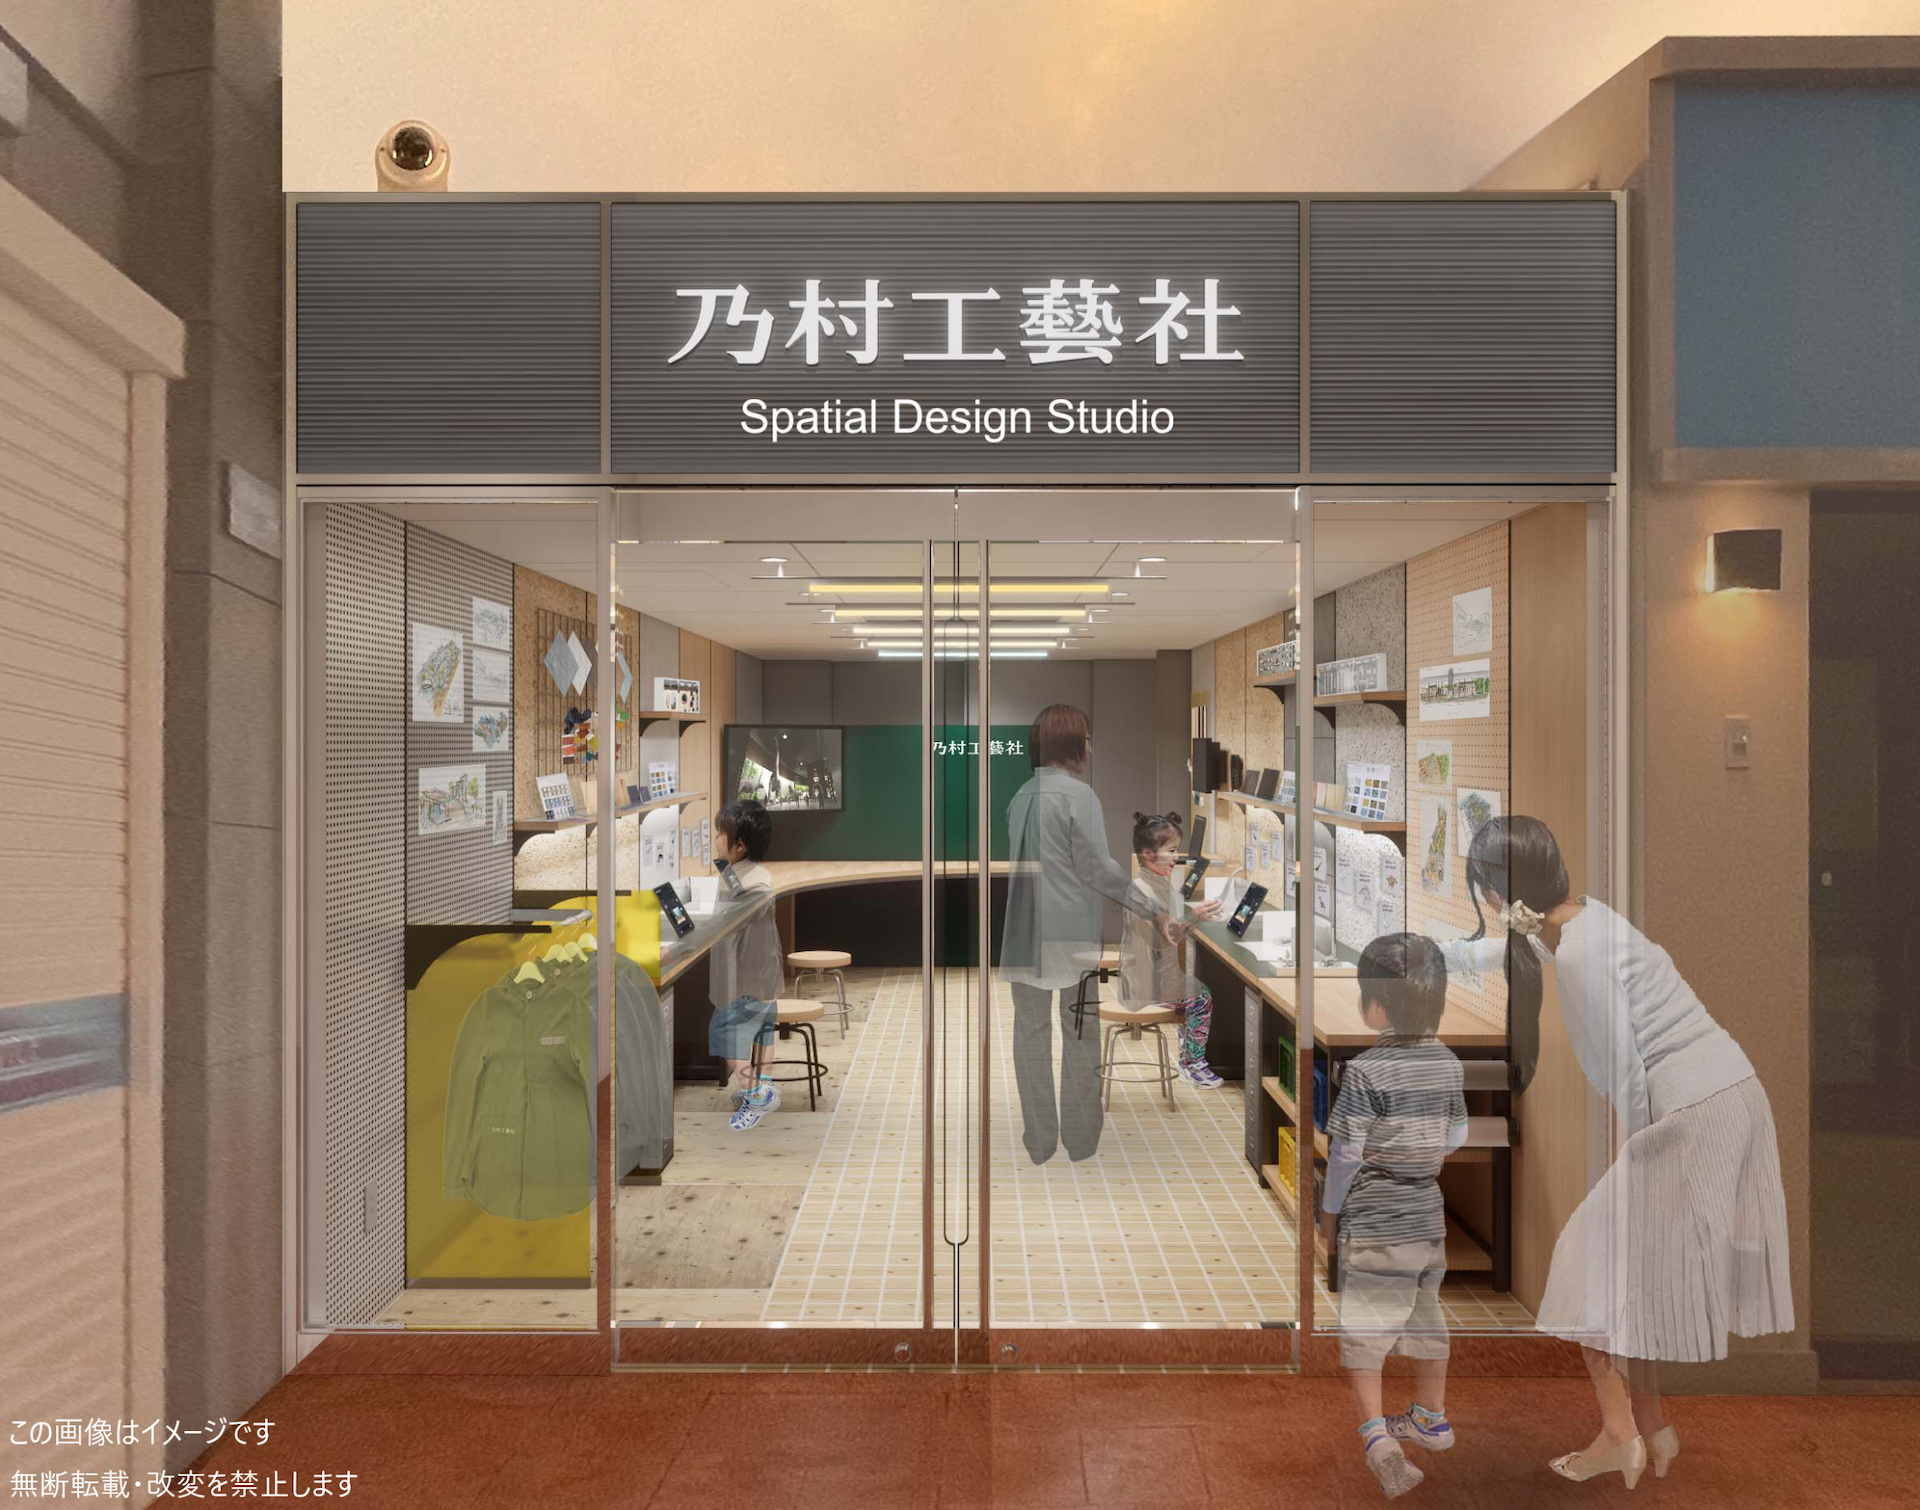 乃村工藝社がキッザニア福岡にパビリオンを出展 　「空間デザインスタジオ」 2023年10月31日オープン　～「空間デザイナー」の仕事体験が登場～